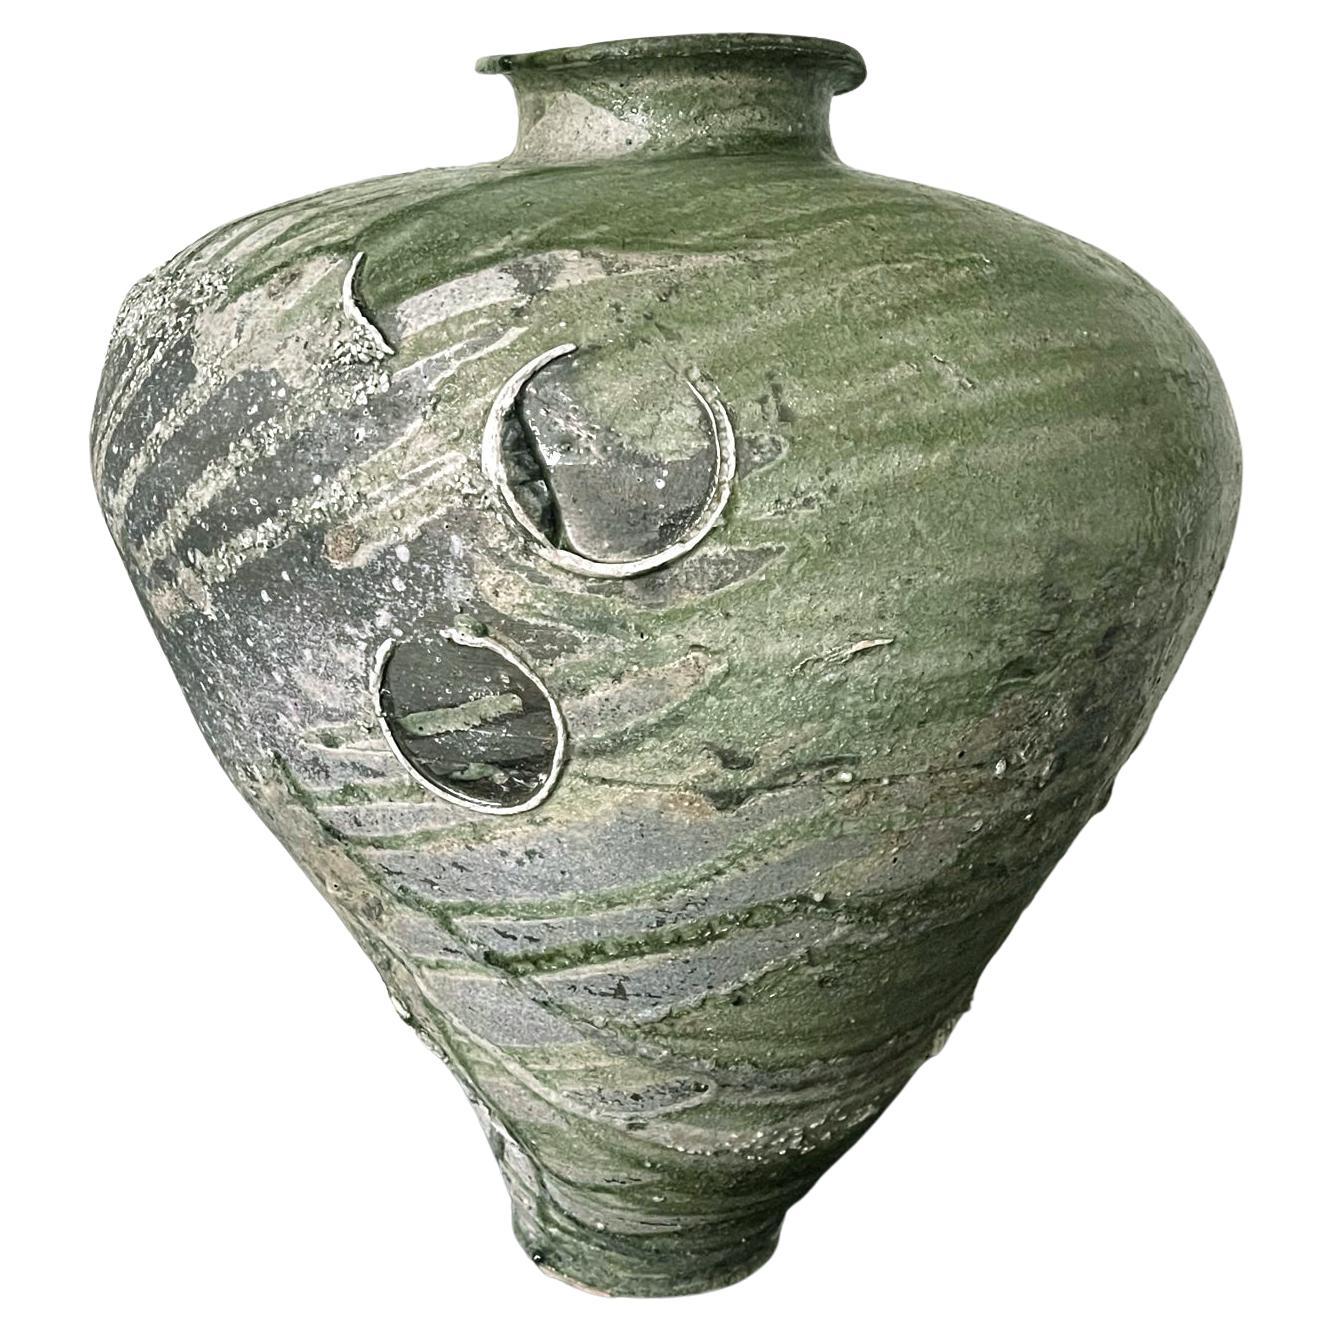 Massives Keramikgefäß Tsubo der japanischen Töpferei Tsujimura Yui